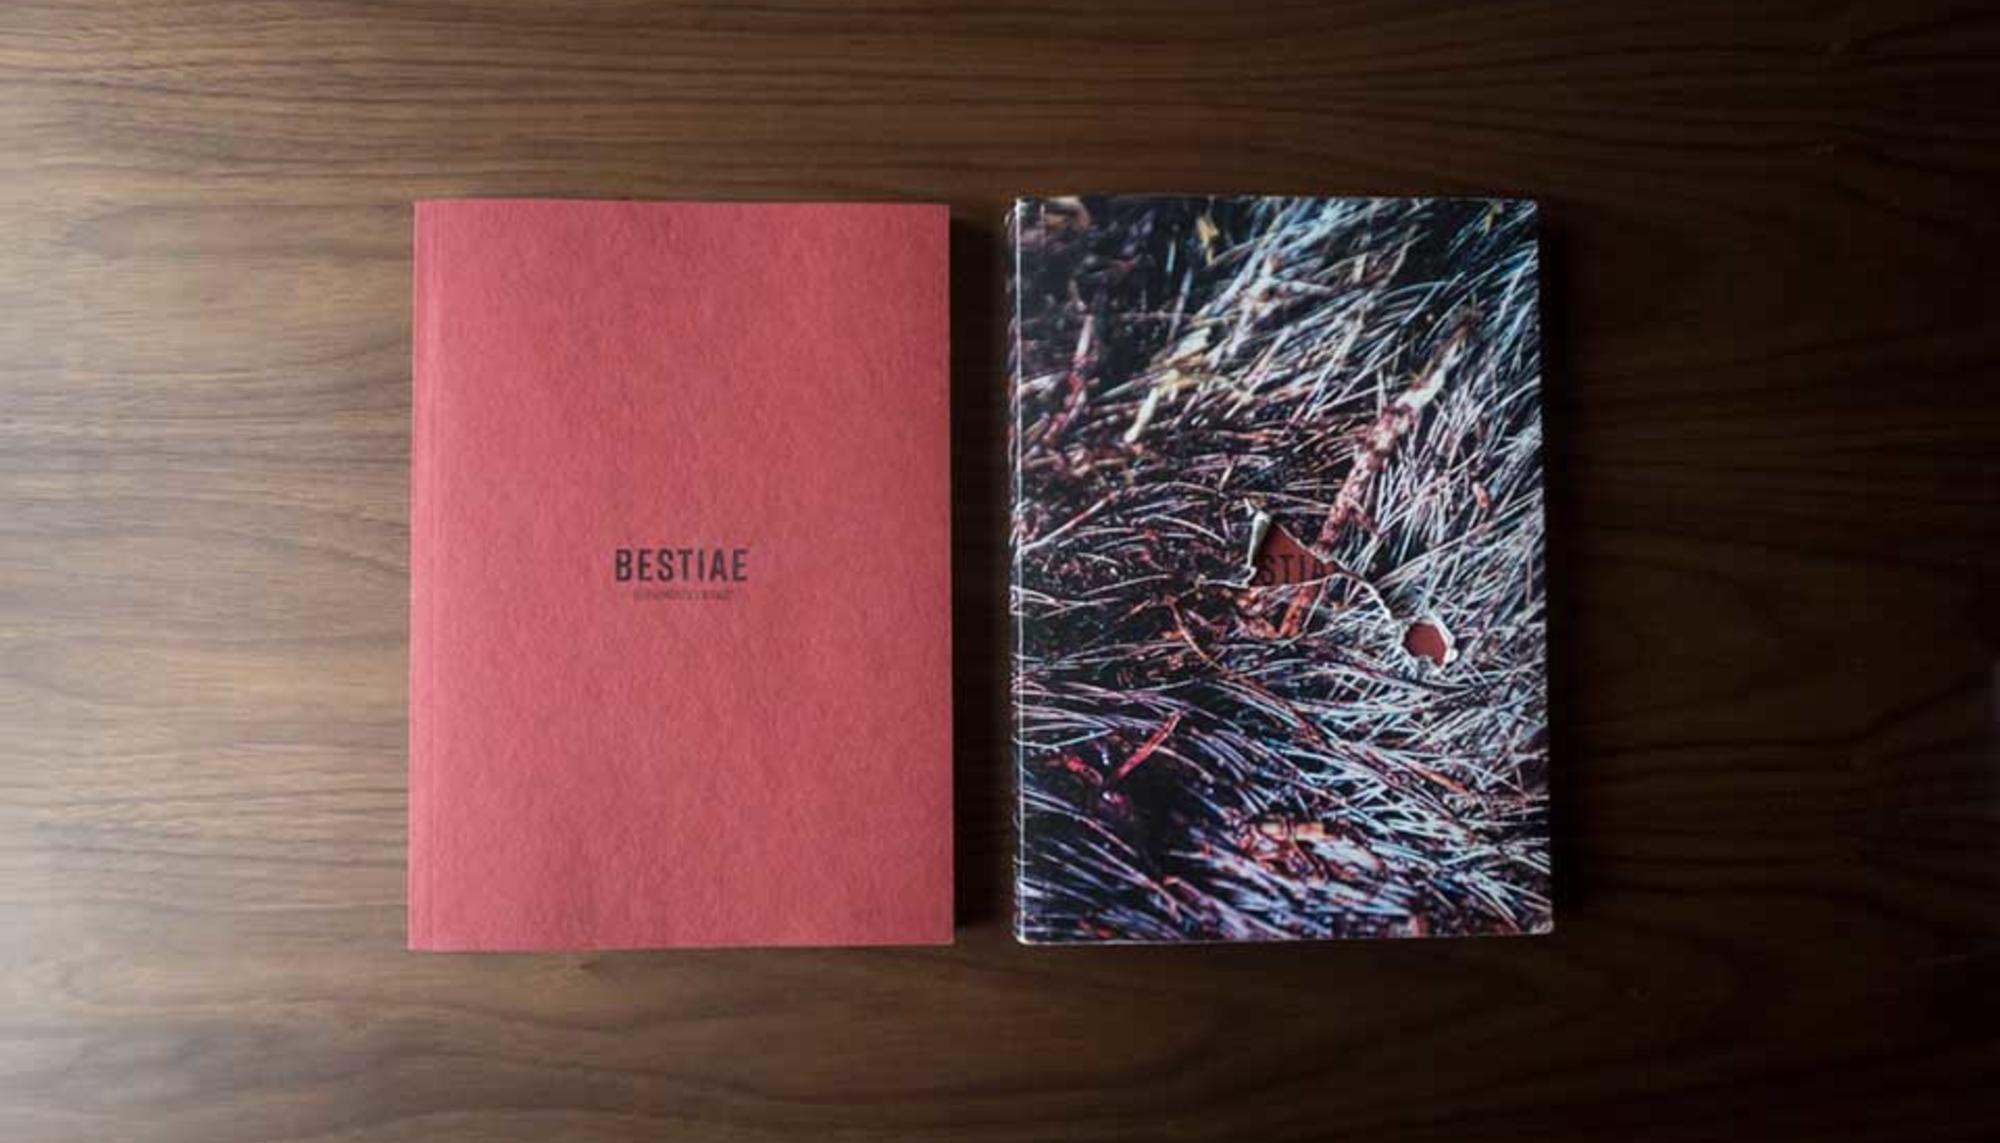 Bestiae, proyecto artístico sobre la dominación animal en la caza